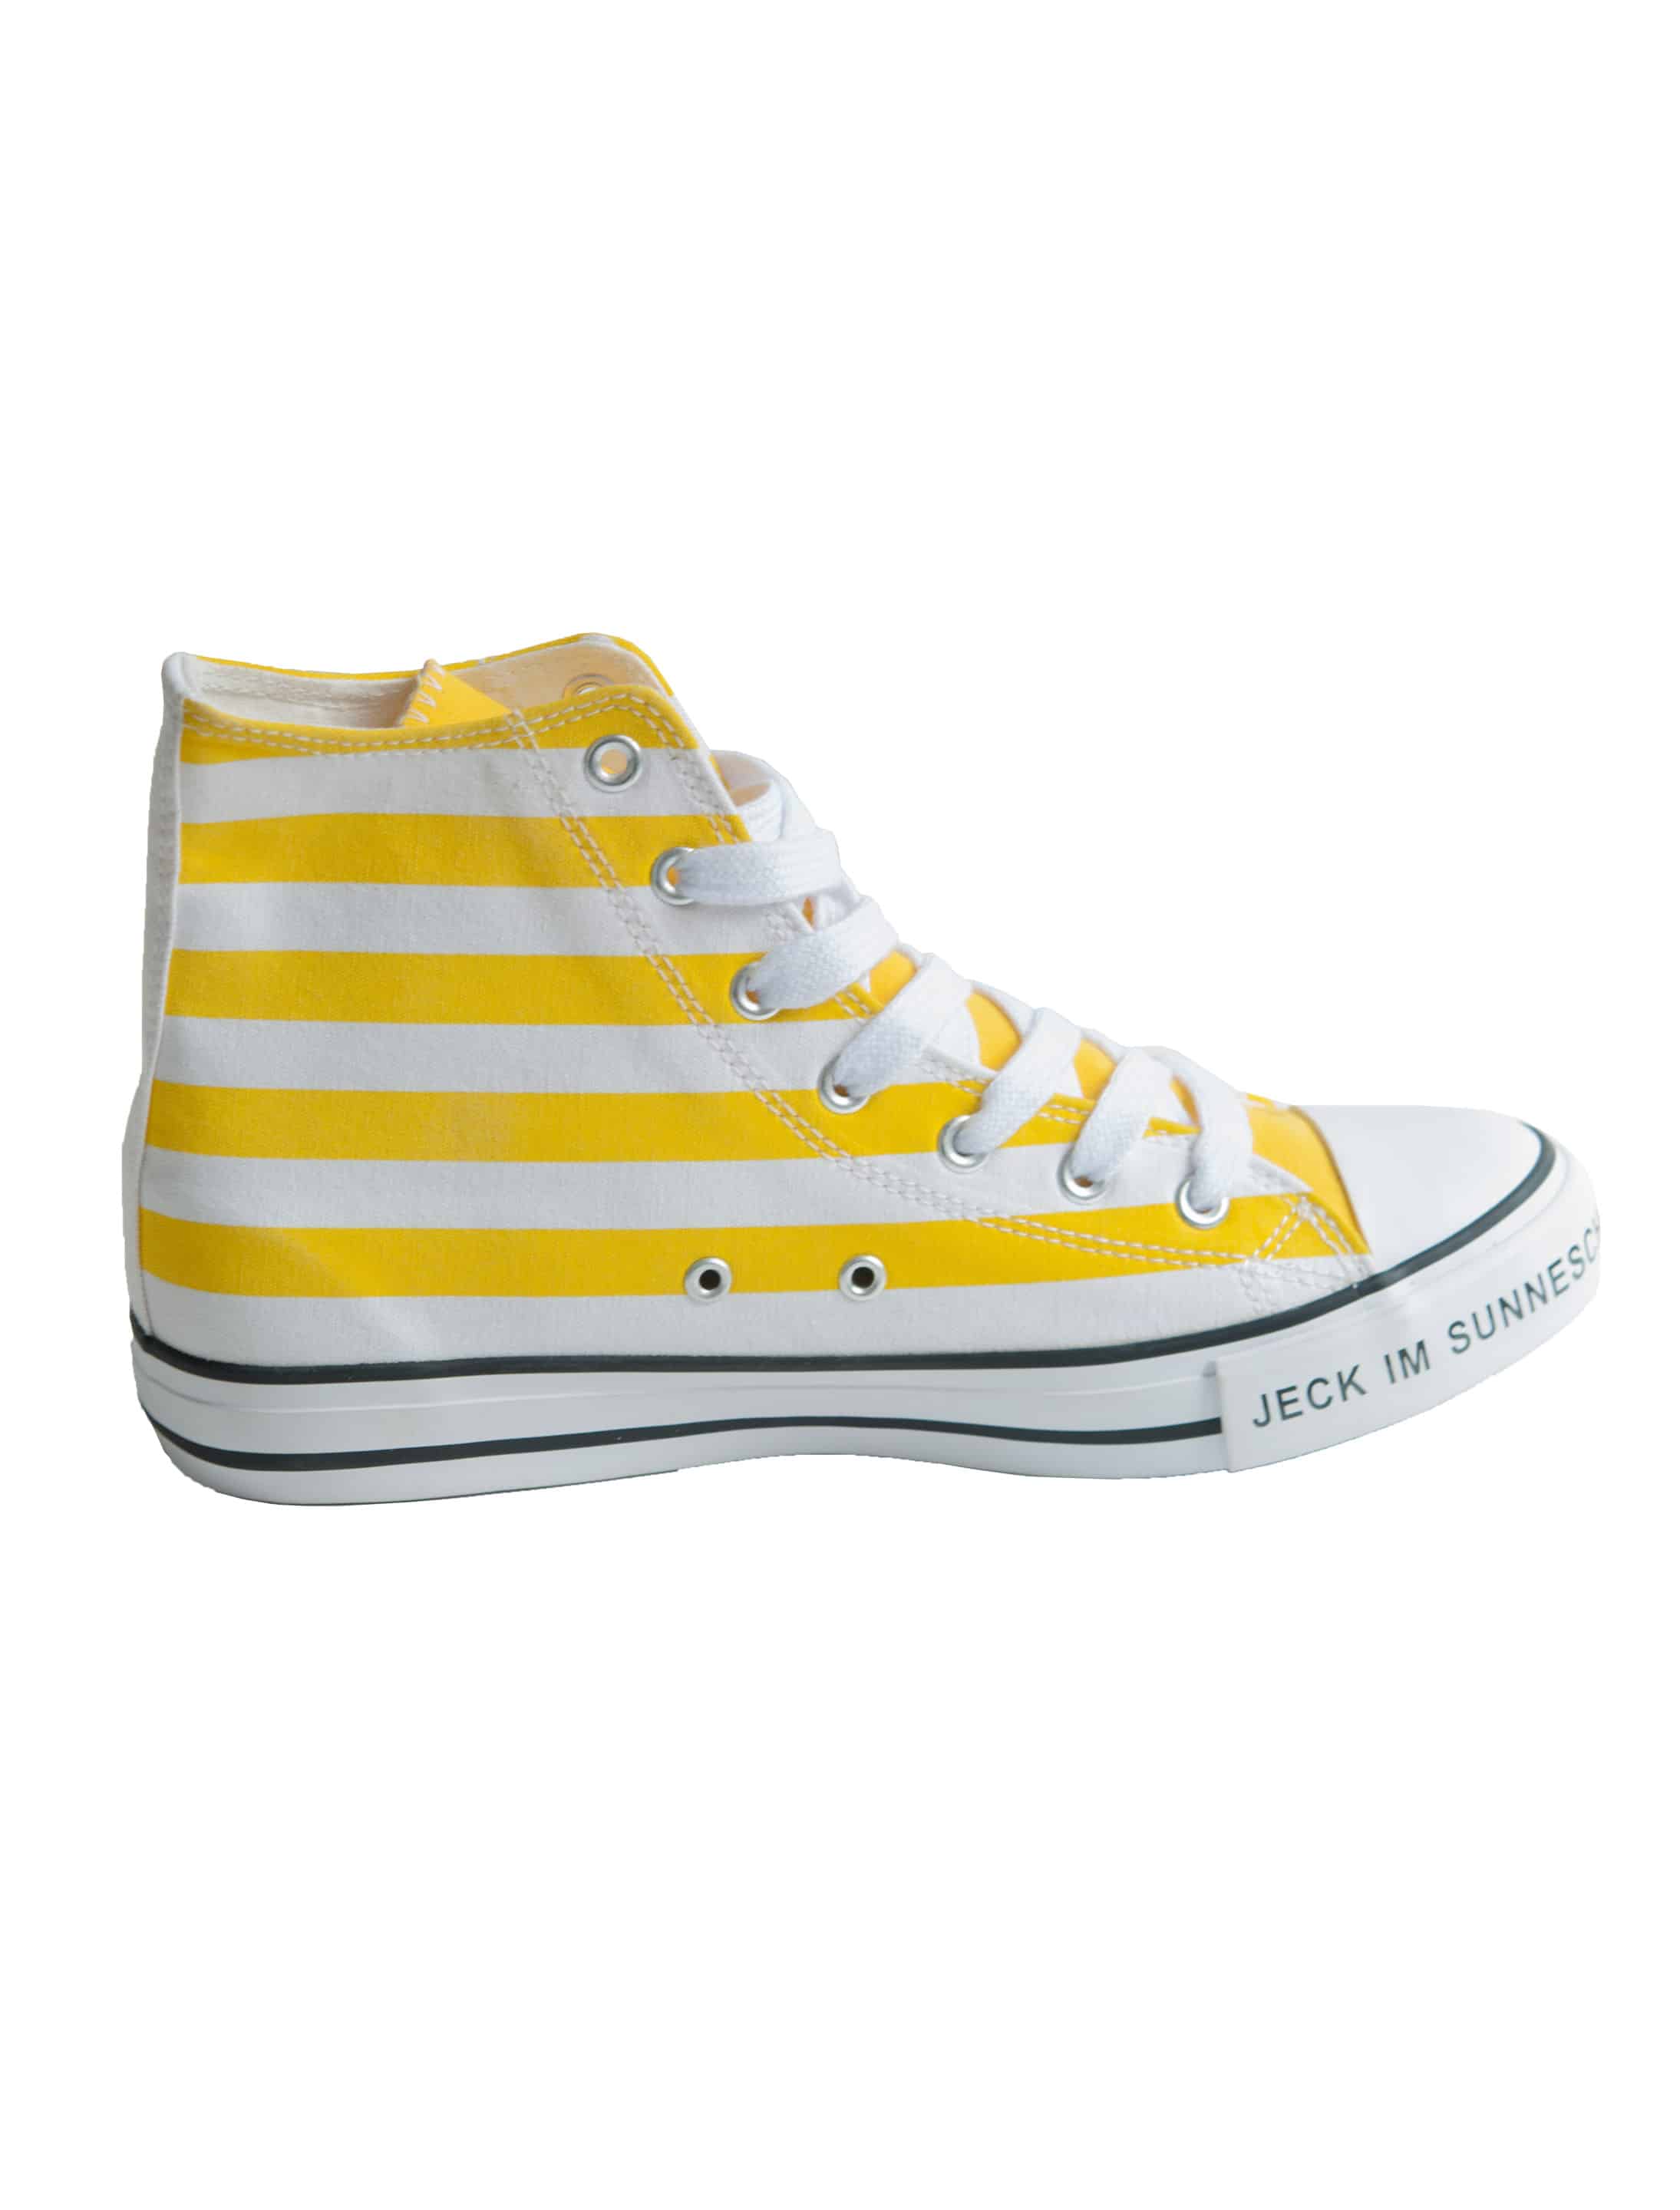 Schuhe Jeck im Sunnesching gelb 44